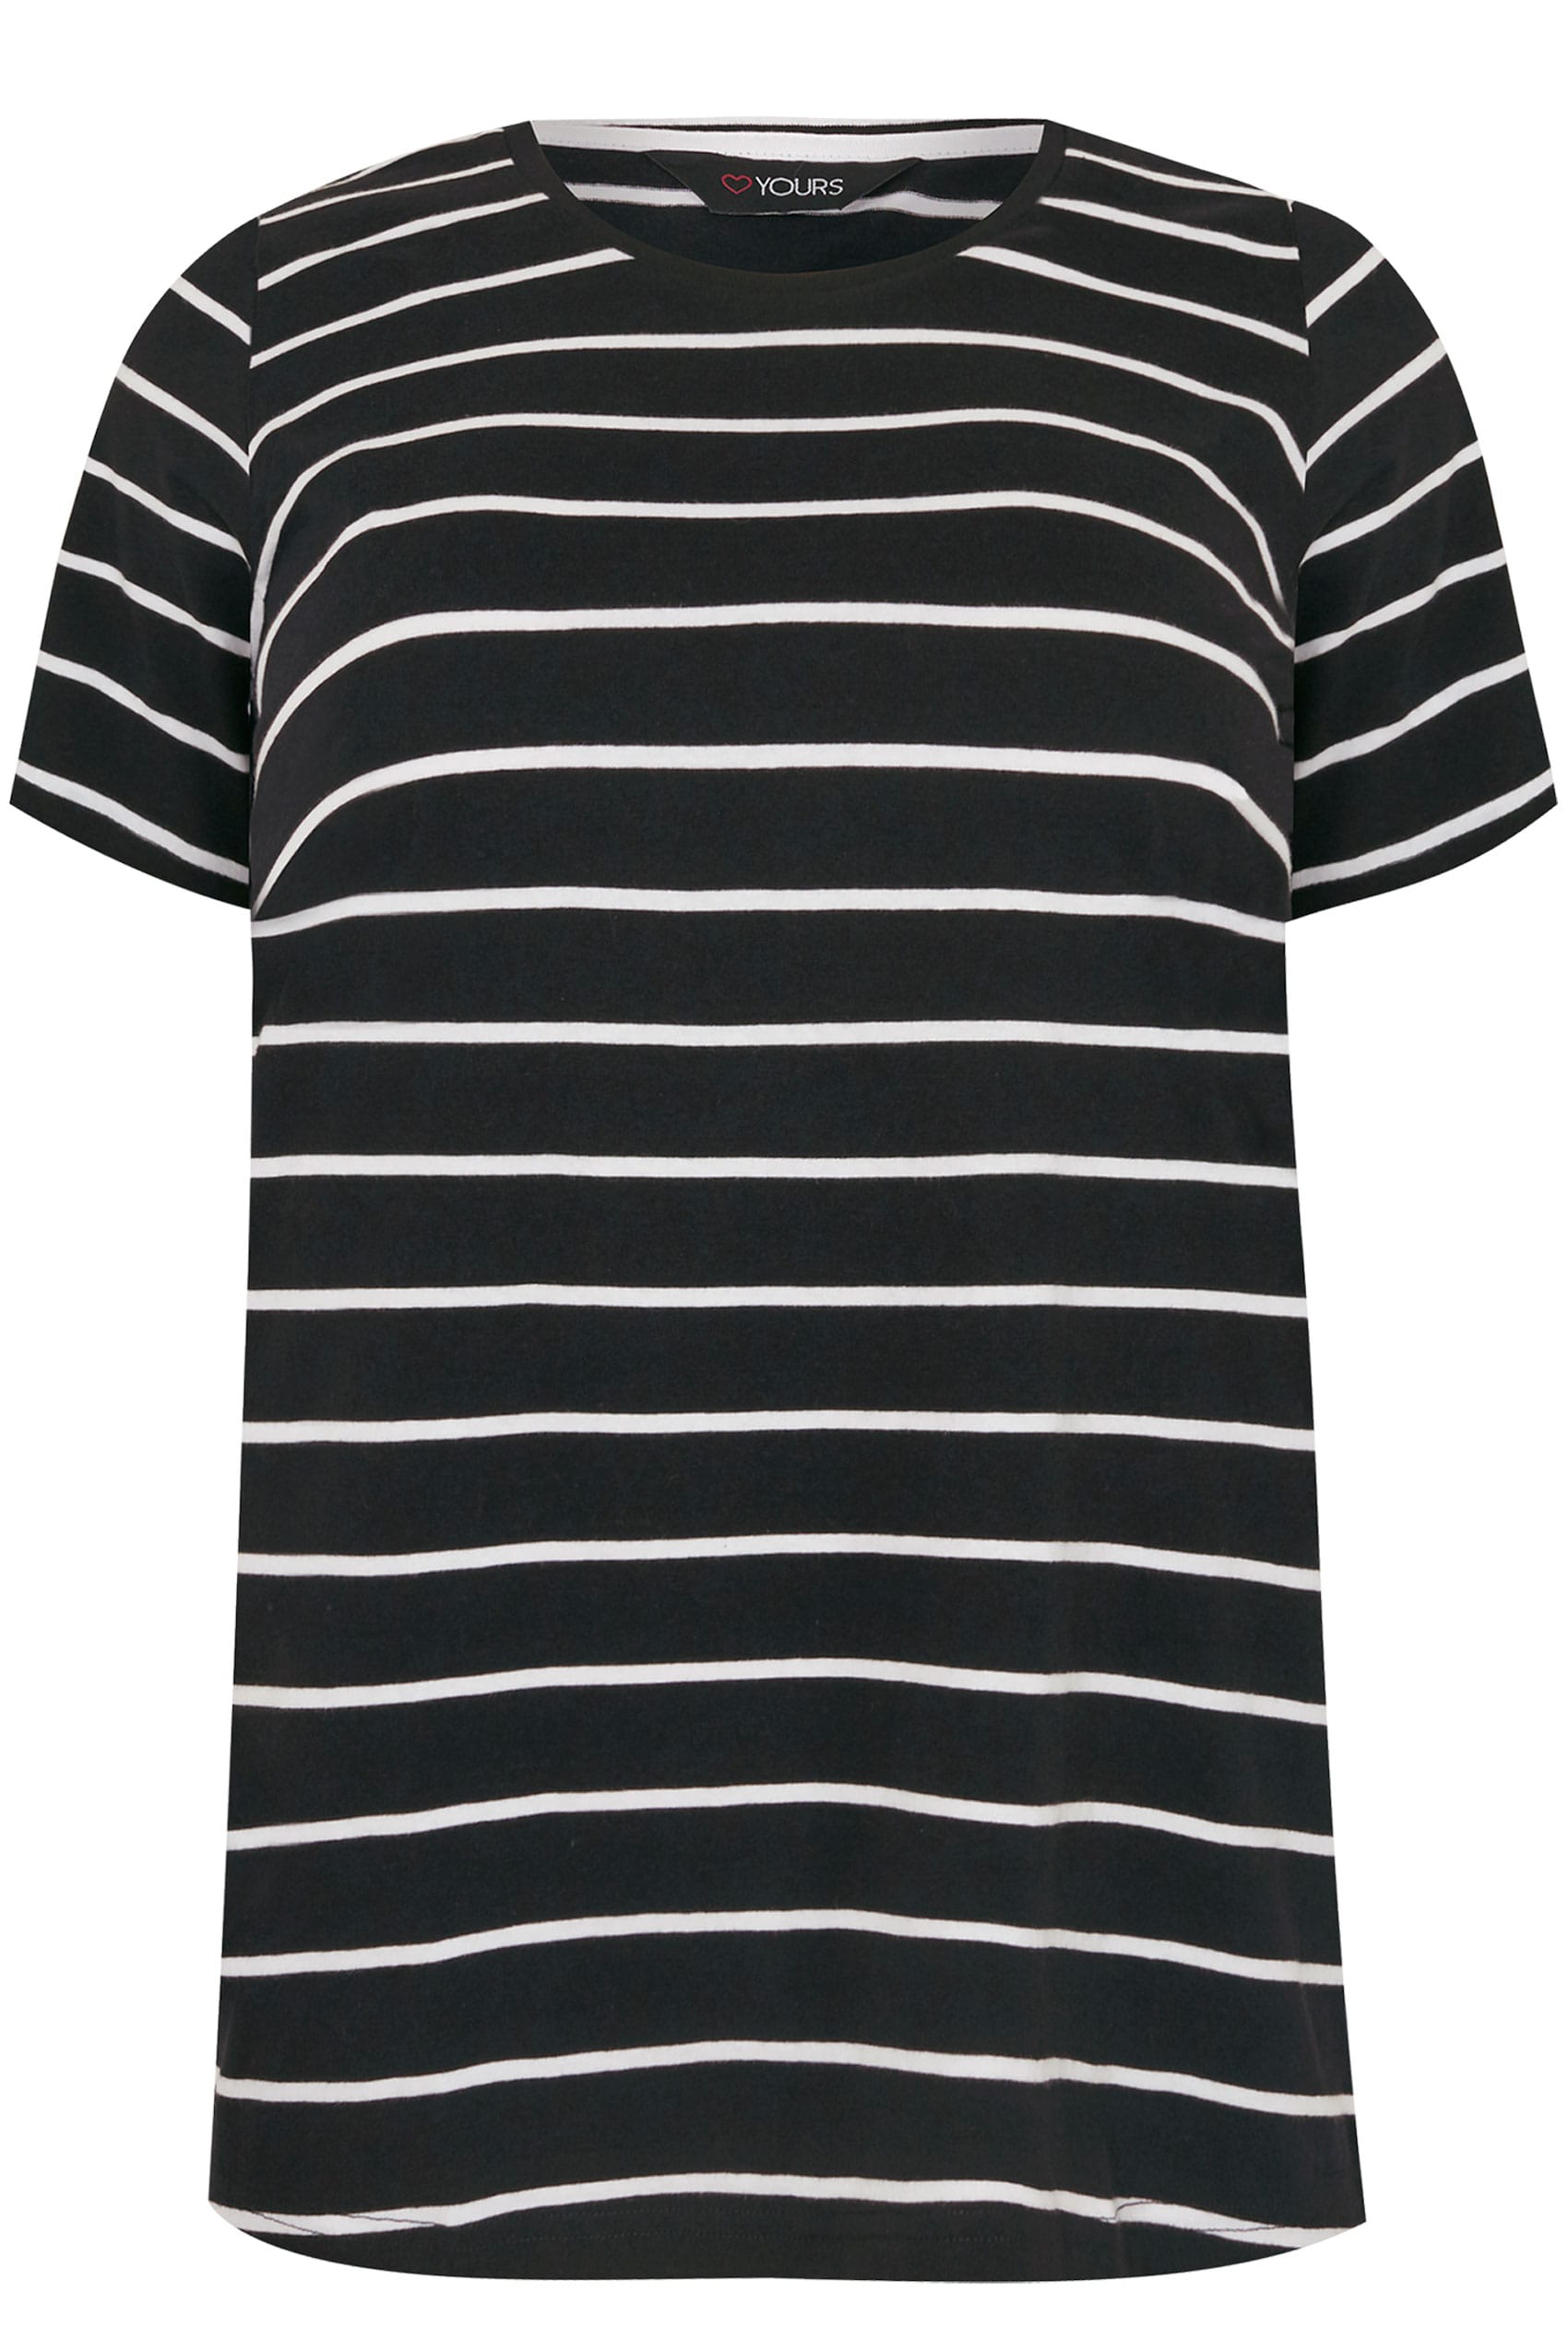 2 PACK Black & White Stripe & Plain T-Shirt, Plus size 16 to 36